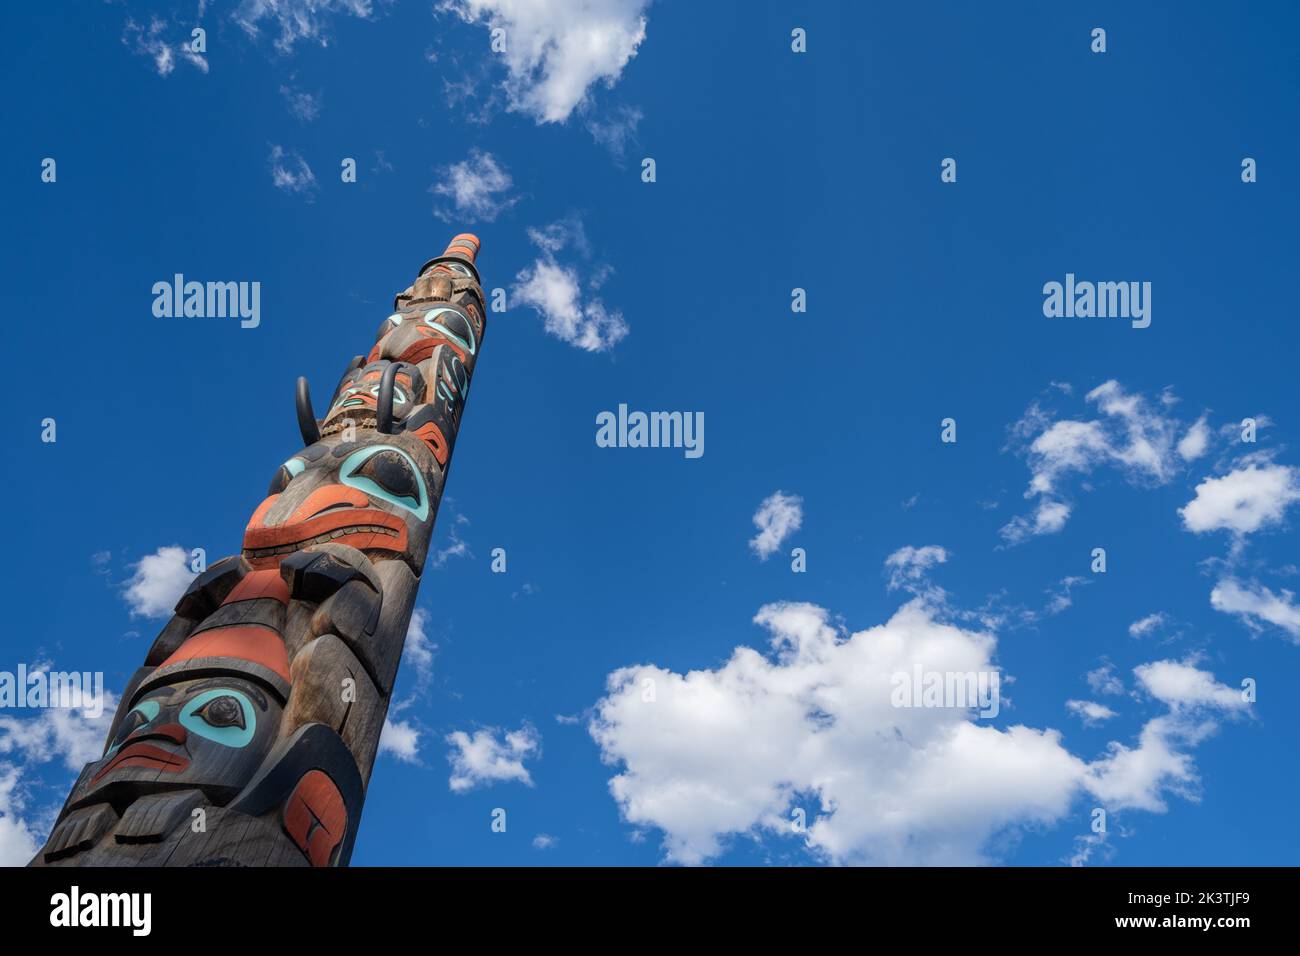 Jasper, Alberta, Canada - July 12, 2022: Totem pole in Jasper National Park against a blue sky Stock Photo